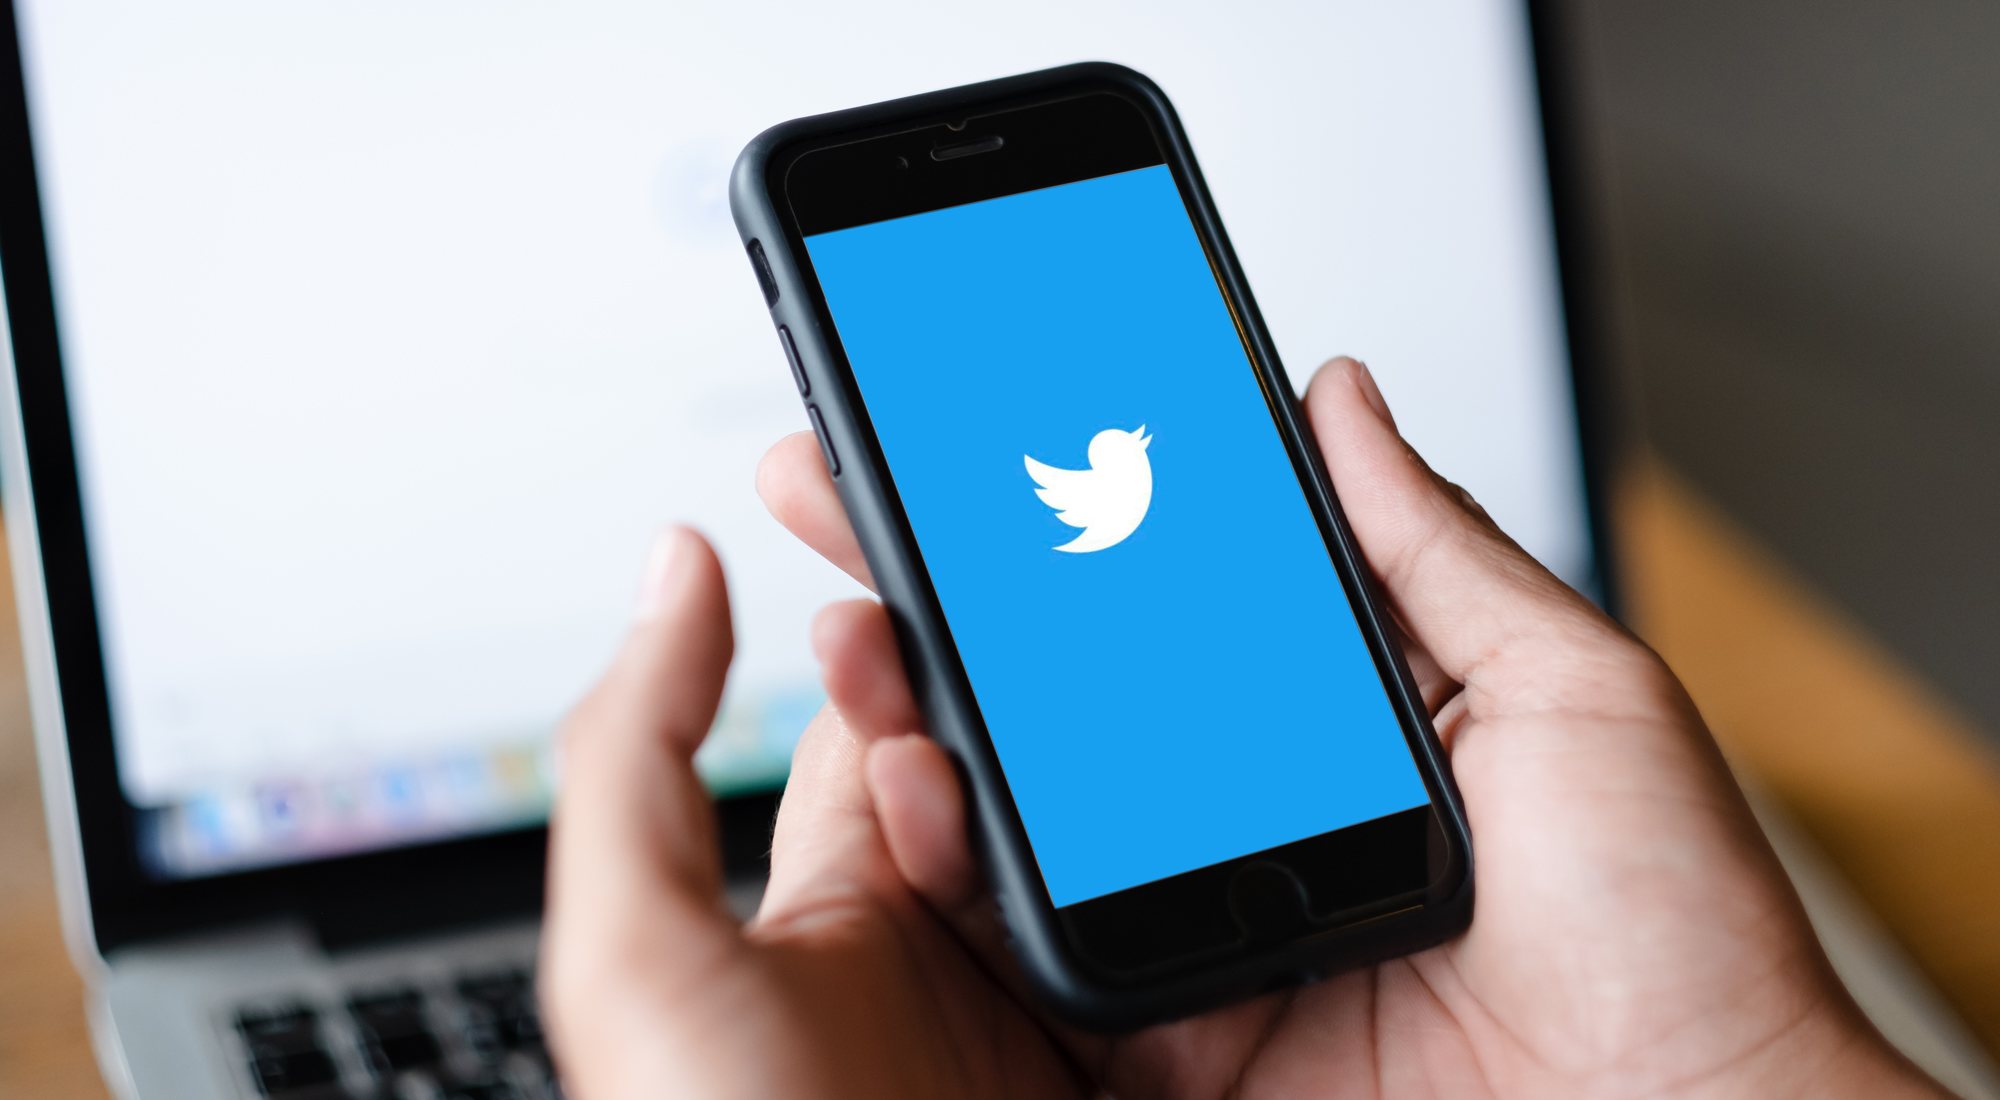 Verificar nuestra cuenta de Twitter trae consigo algunas importantes ventajas